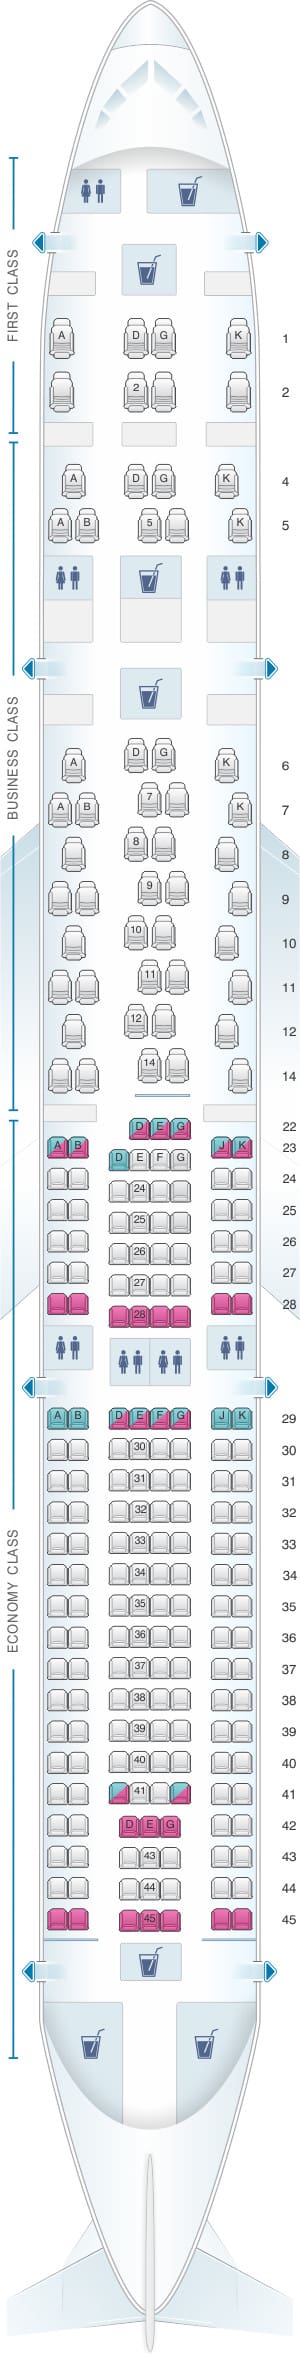 Swiss A330 Seat Map